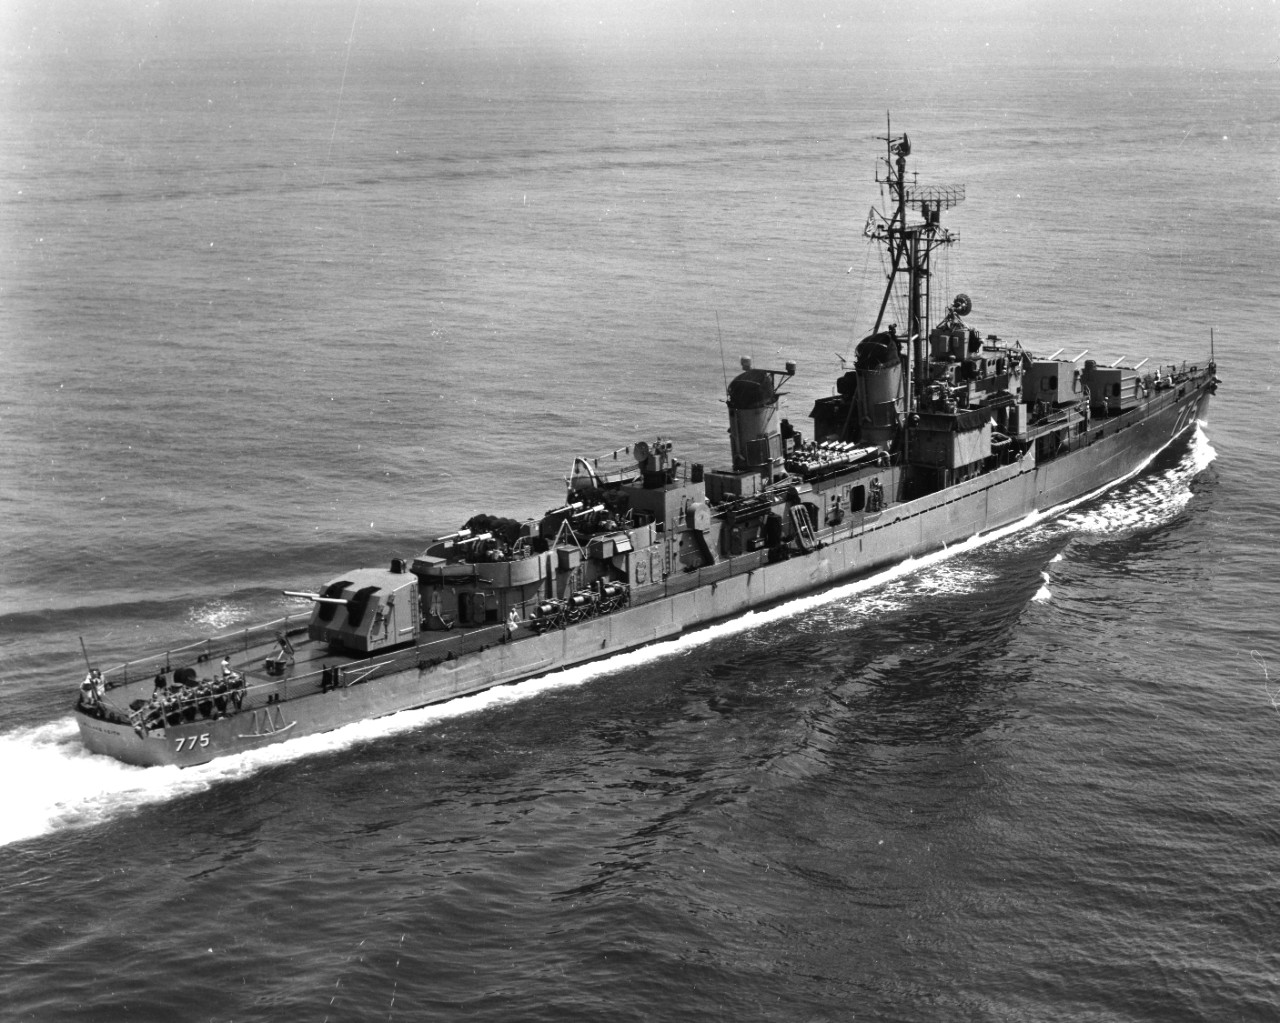 Starboard quarter view of destroyer USS Willard Keith (DD-775) underway